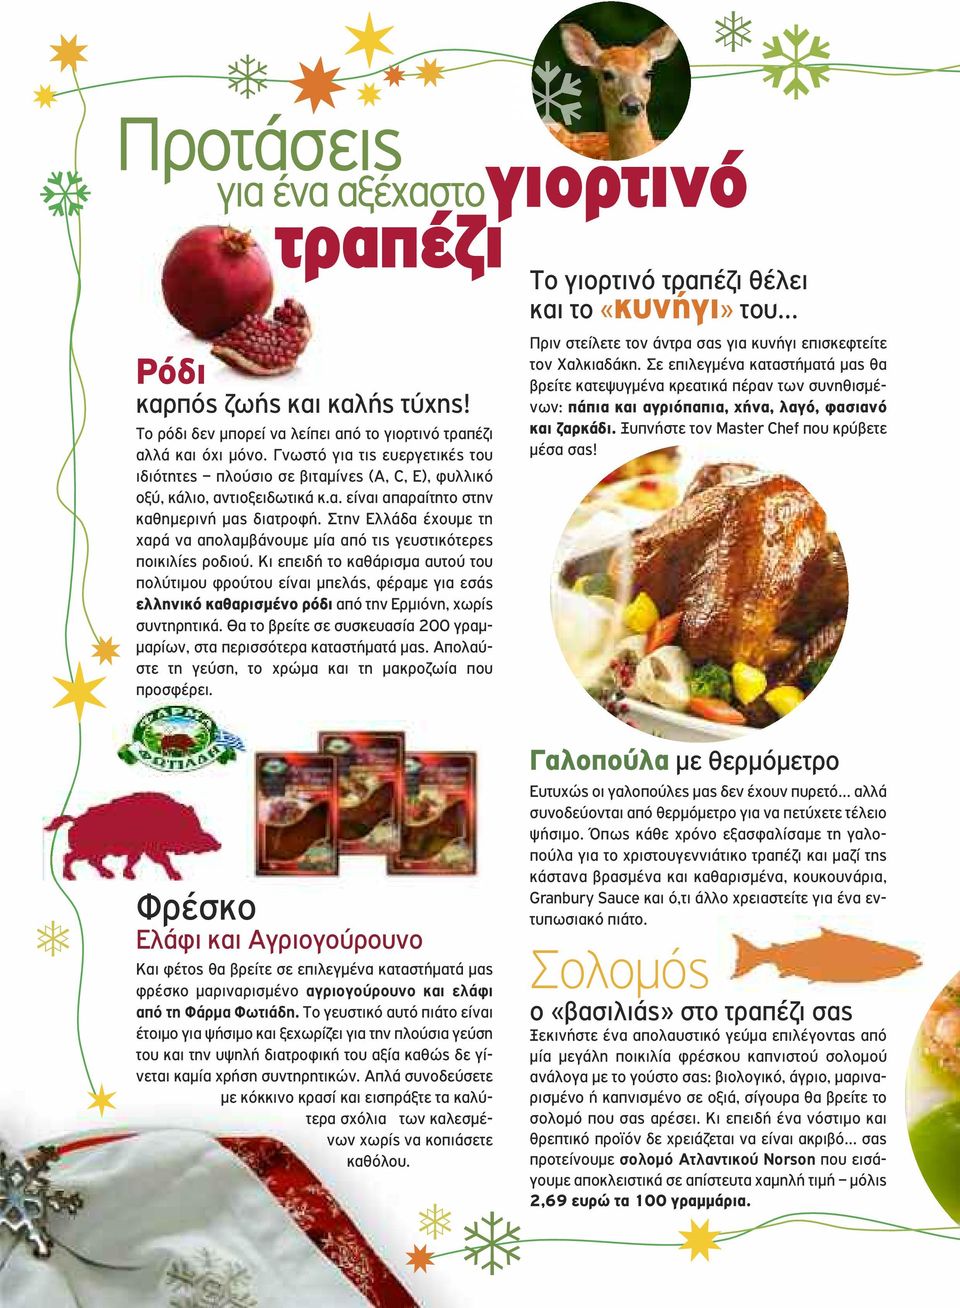 Στην Ελλάδα έχουμε τη χαρά να απολαμβάνουμε μία από τις γευστικότερες ποικιλίες ροδιού.